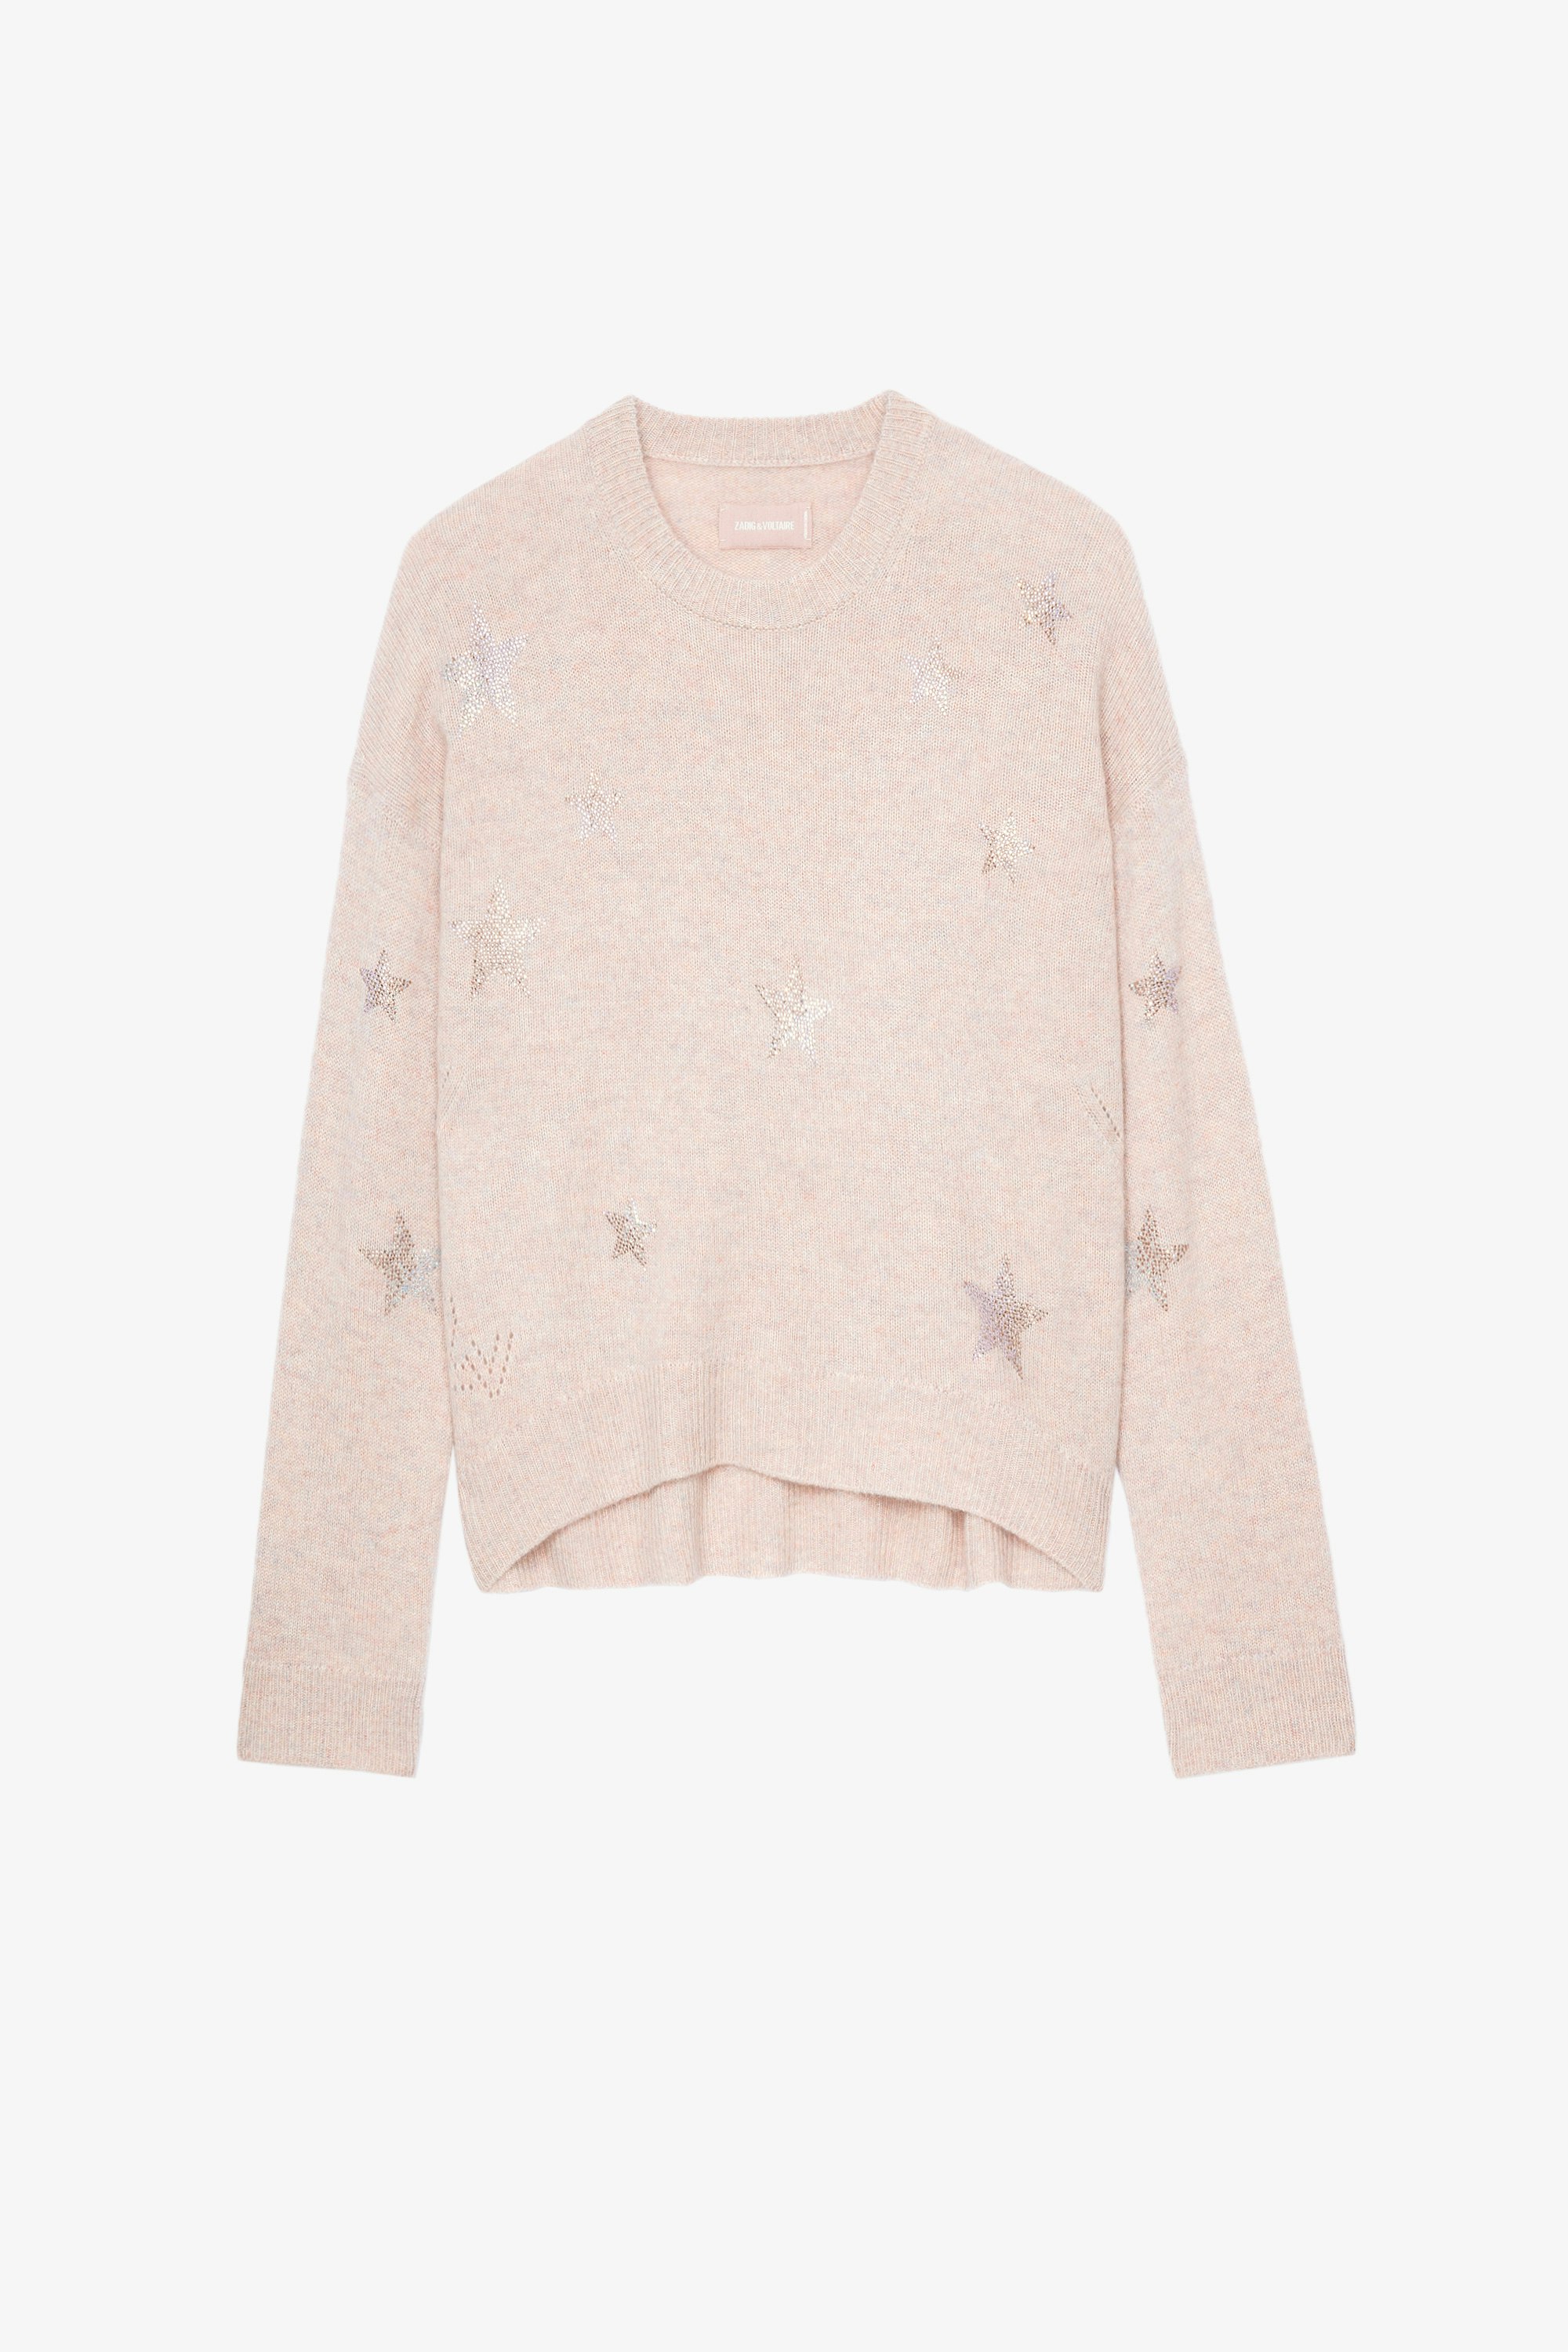 Markus Stars Cashmere Jumper  Women’s pink cashmere jumper with crystal-embellished stars